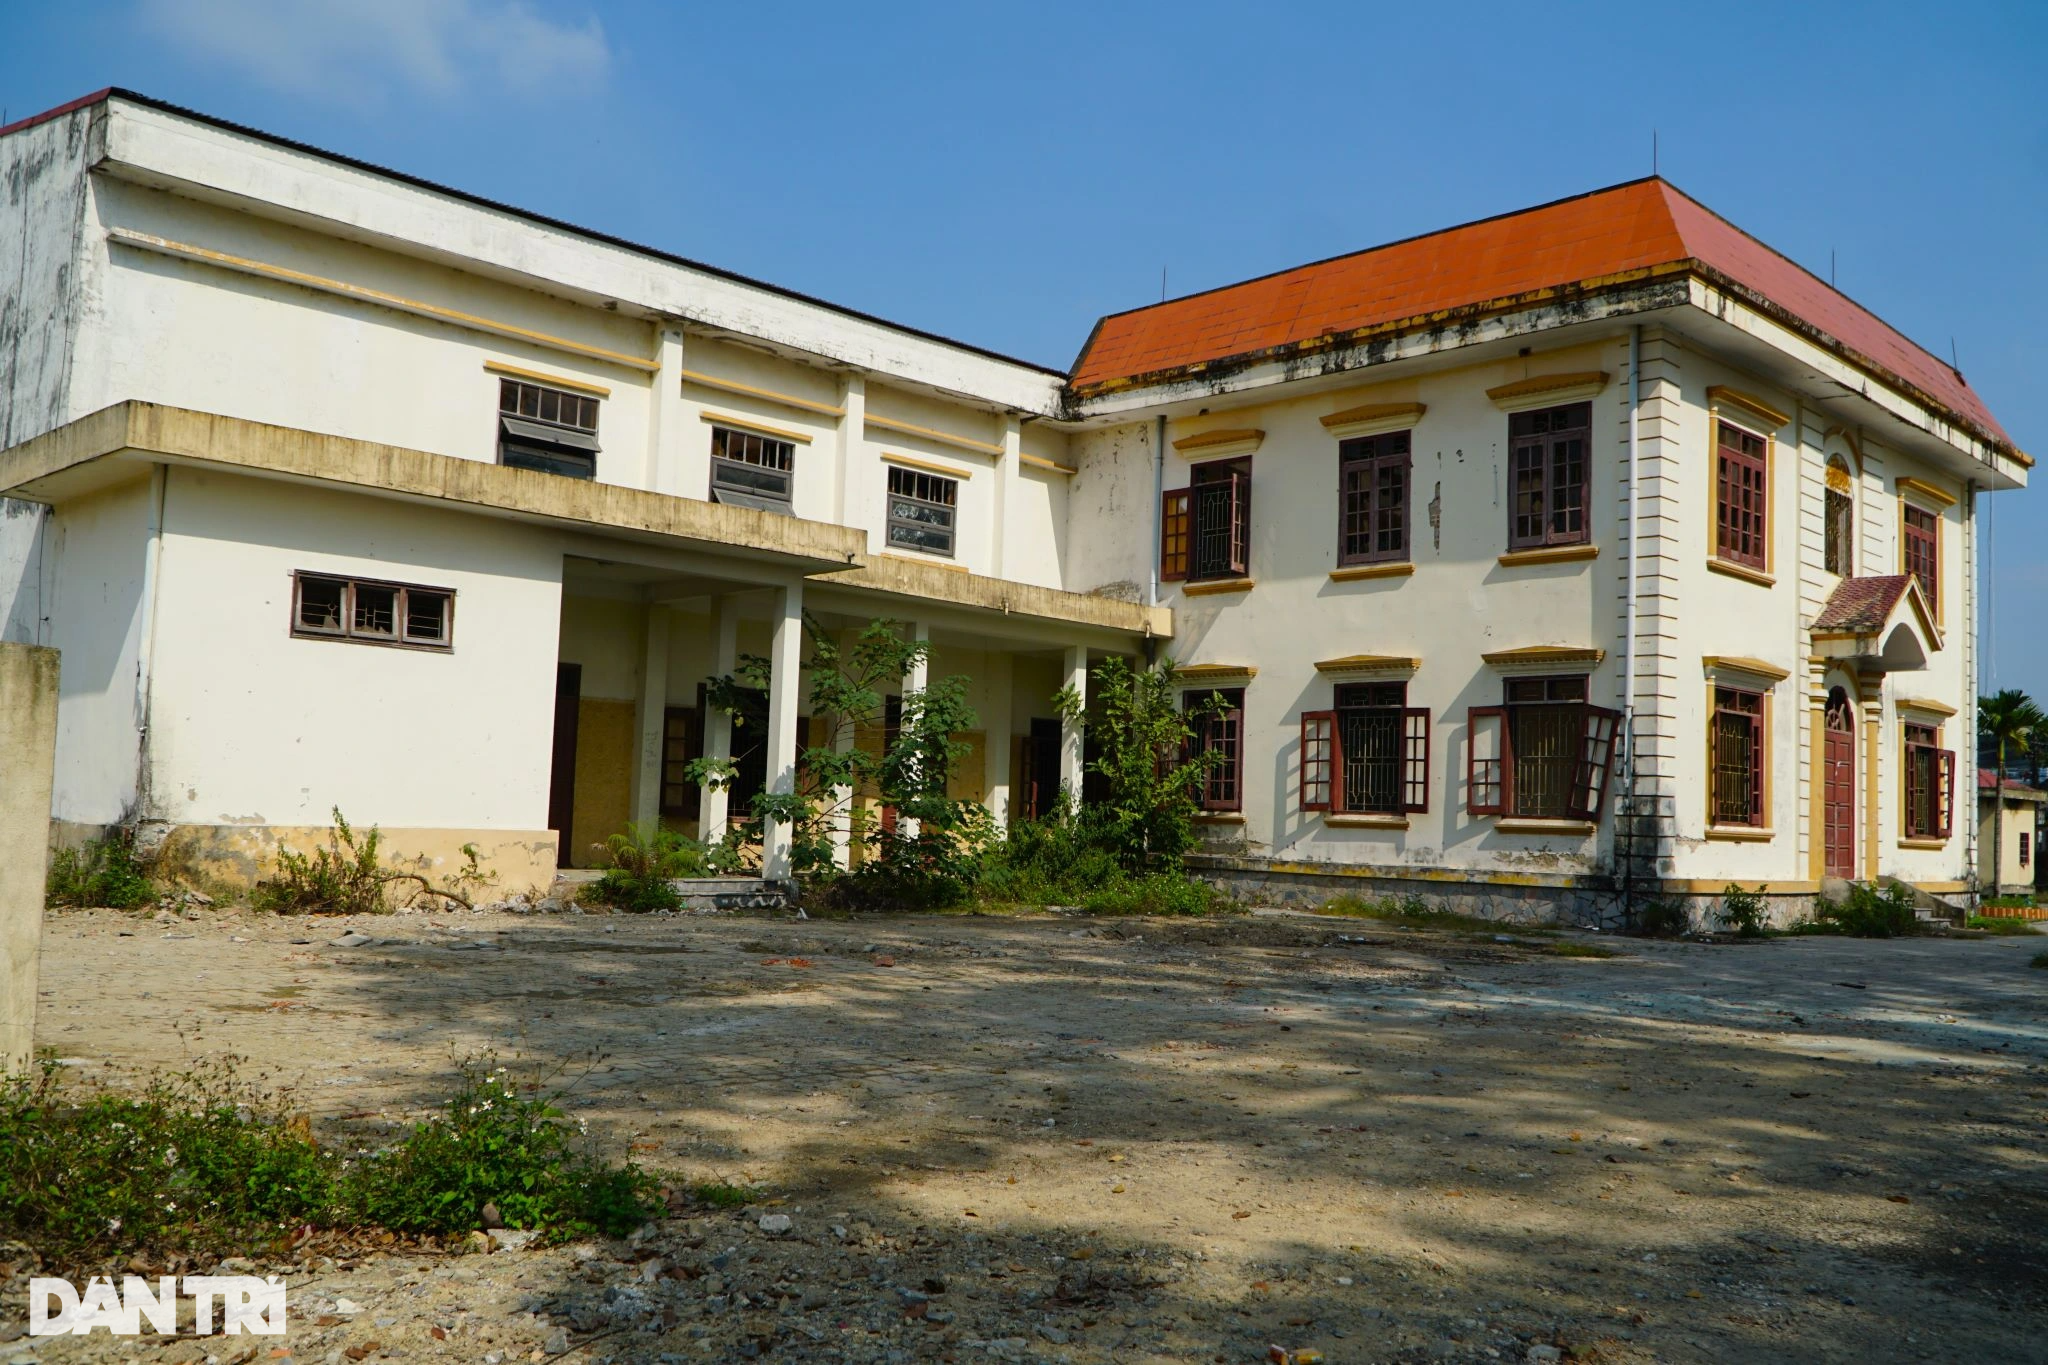 Loạt công sở tiền tỷ ở Thanh Hóa bỏ hoang sau sáp nhập - 2